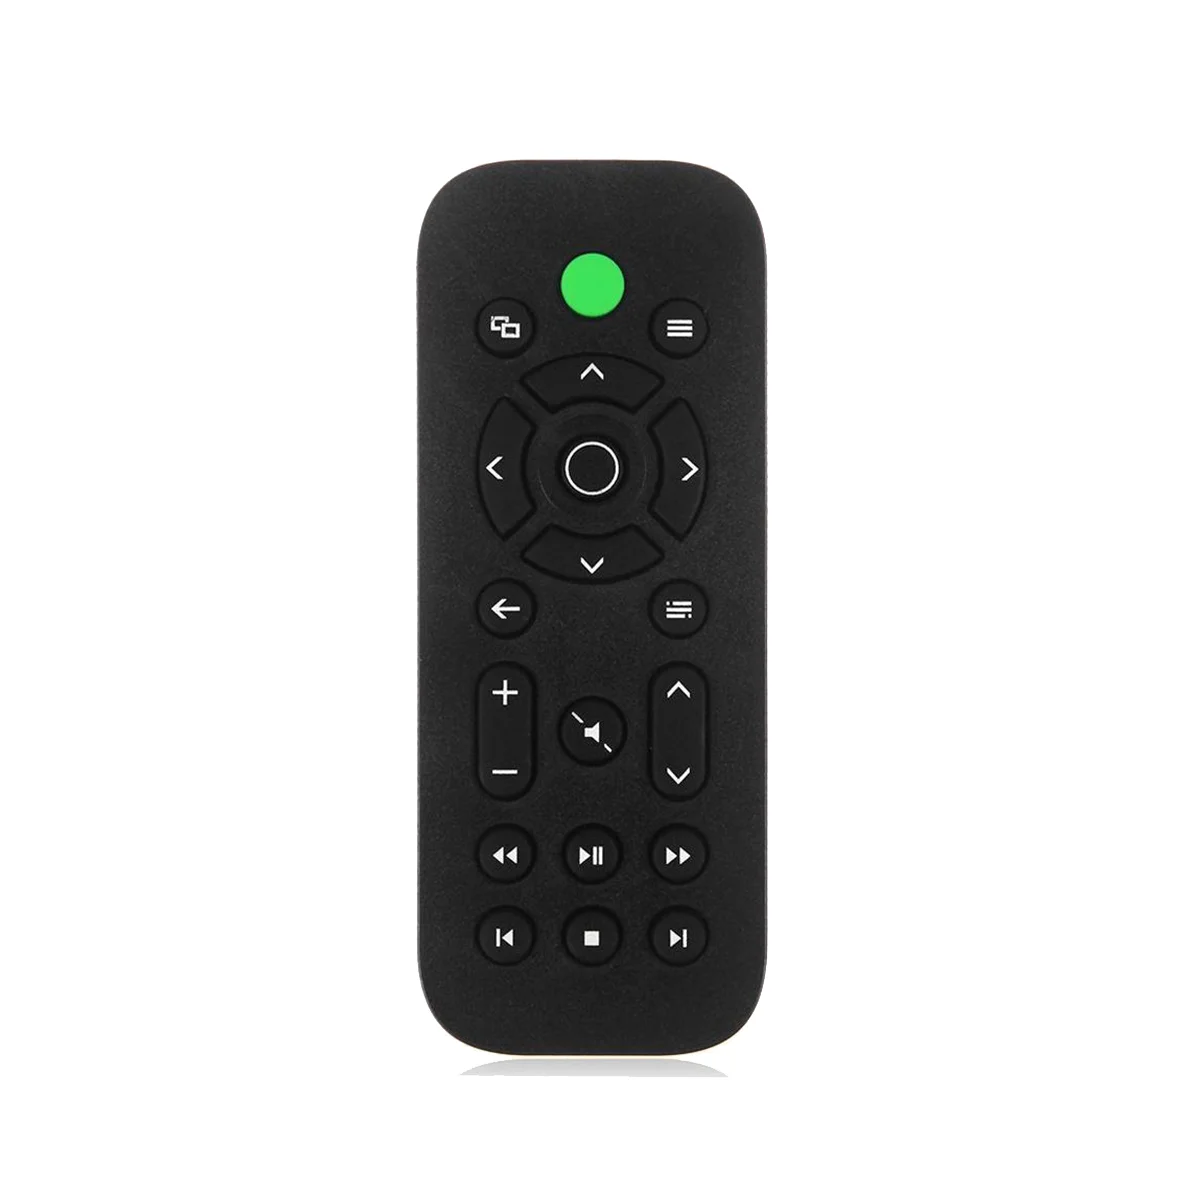 

Пульт дистанционного управления для Xbox One, ТВ-приставки, DVD, мультимедийный контроллер для Microsoft XBOX ONE, игровая консоль